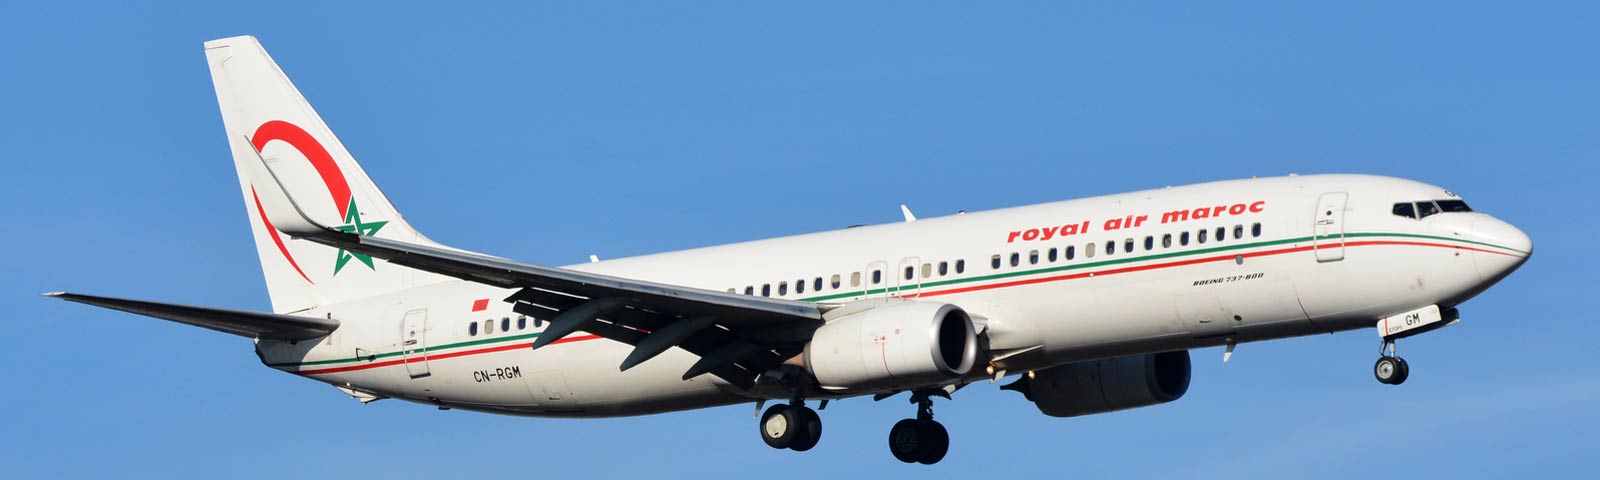 aeroplano in decollo della compagnia royal air maroc